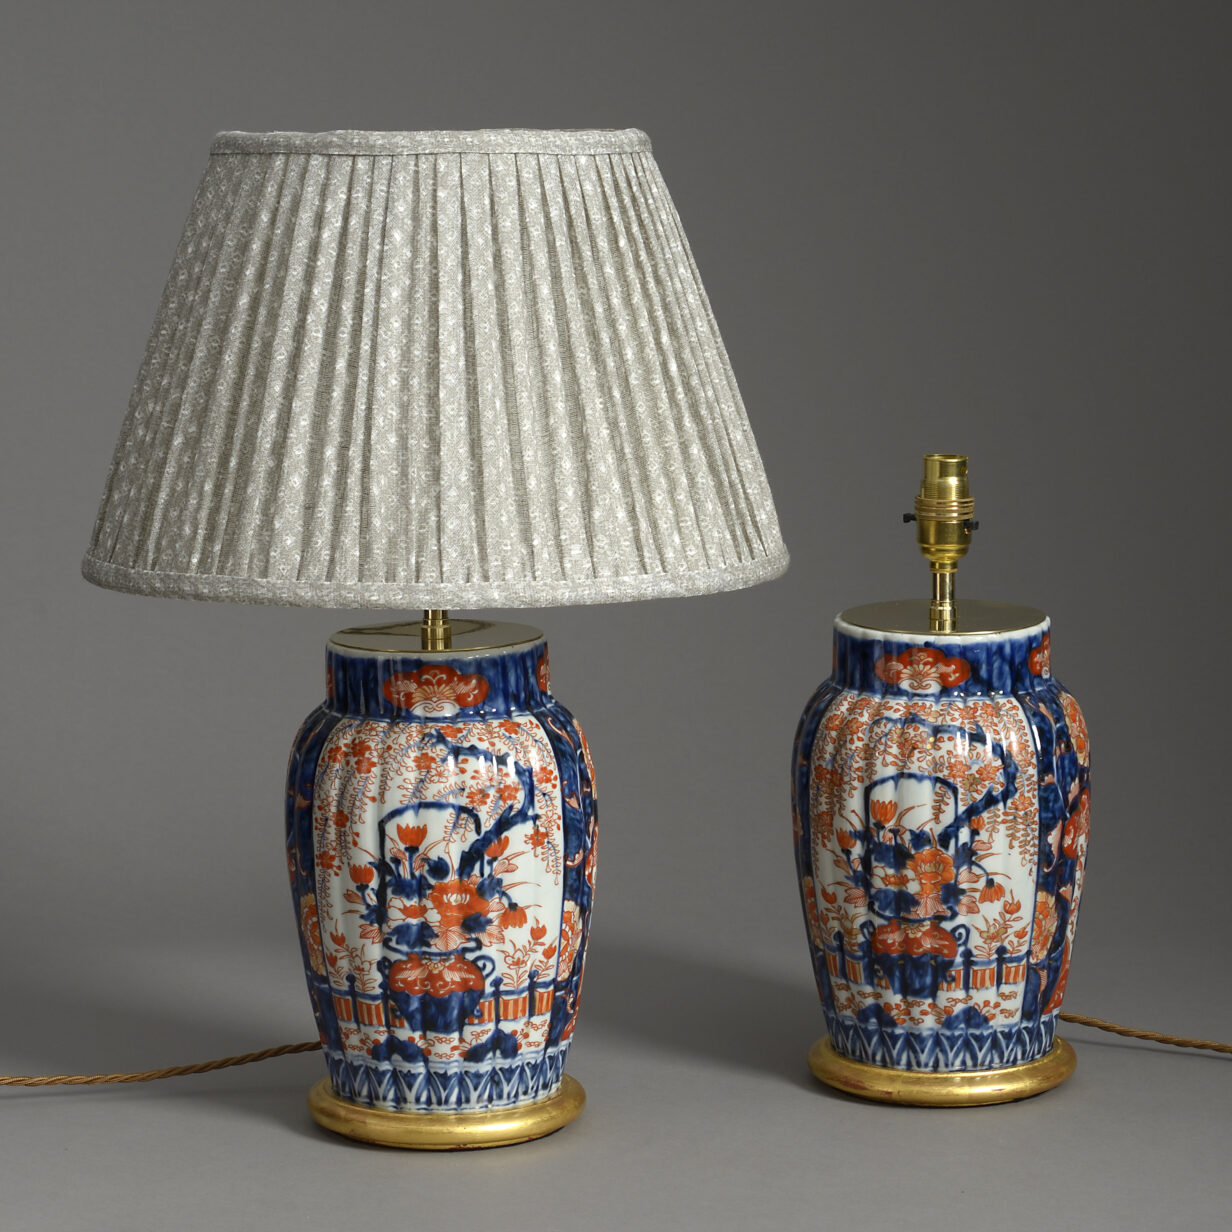 Pair of small imari vase lamps